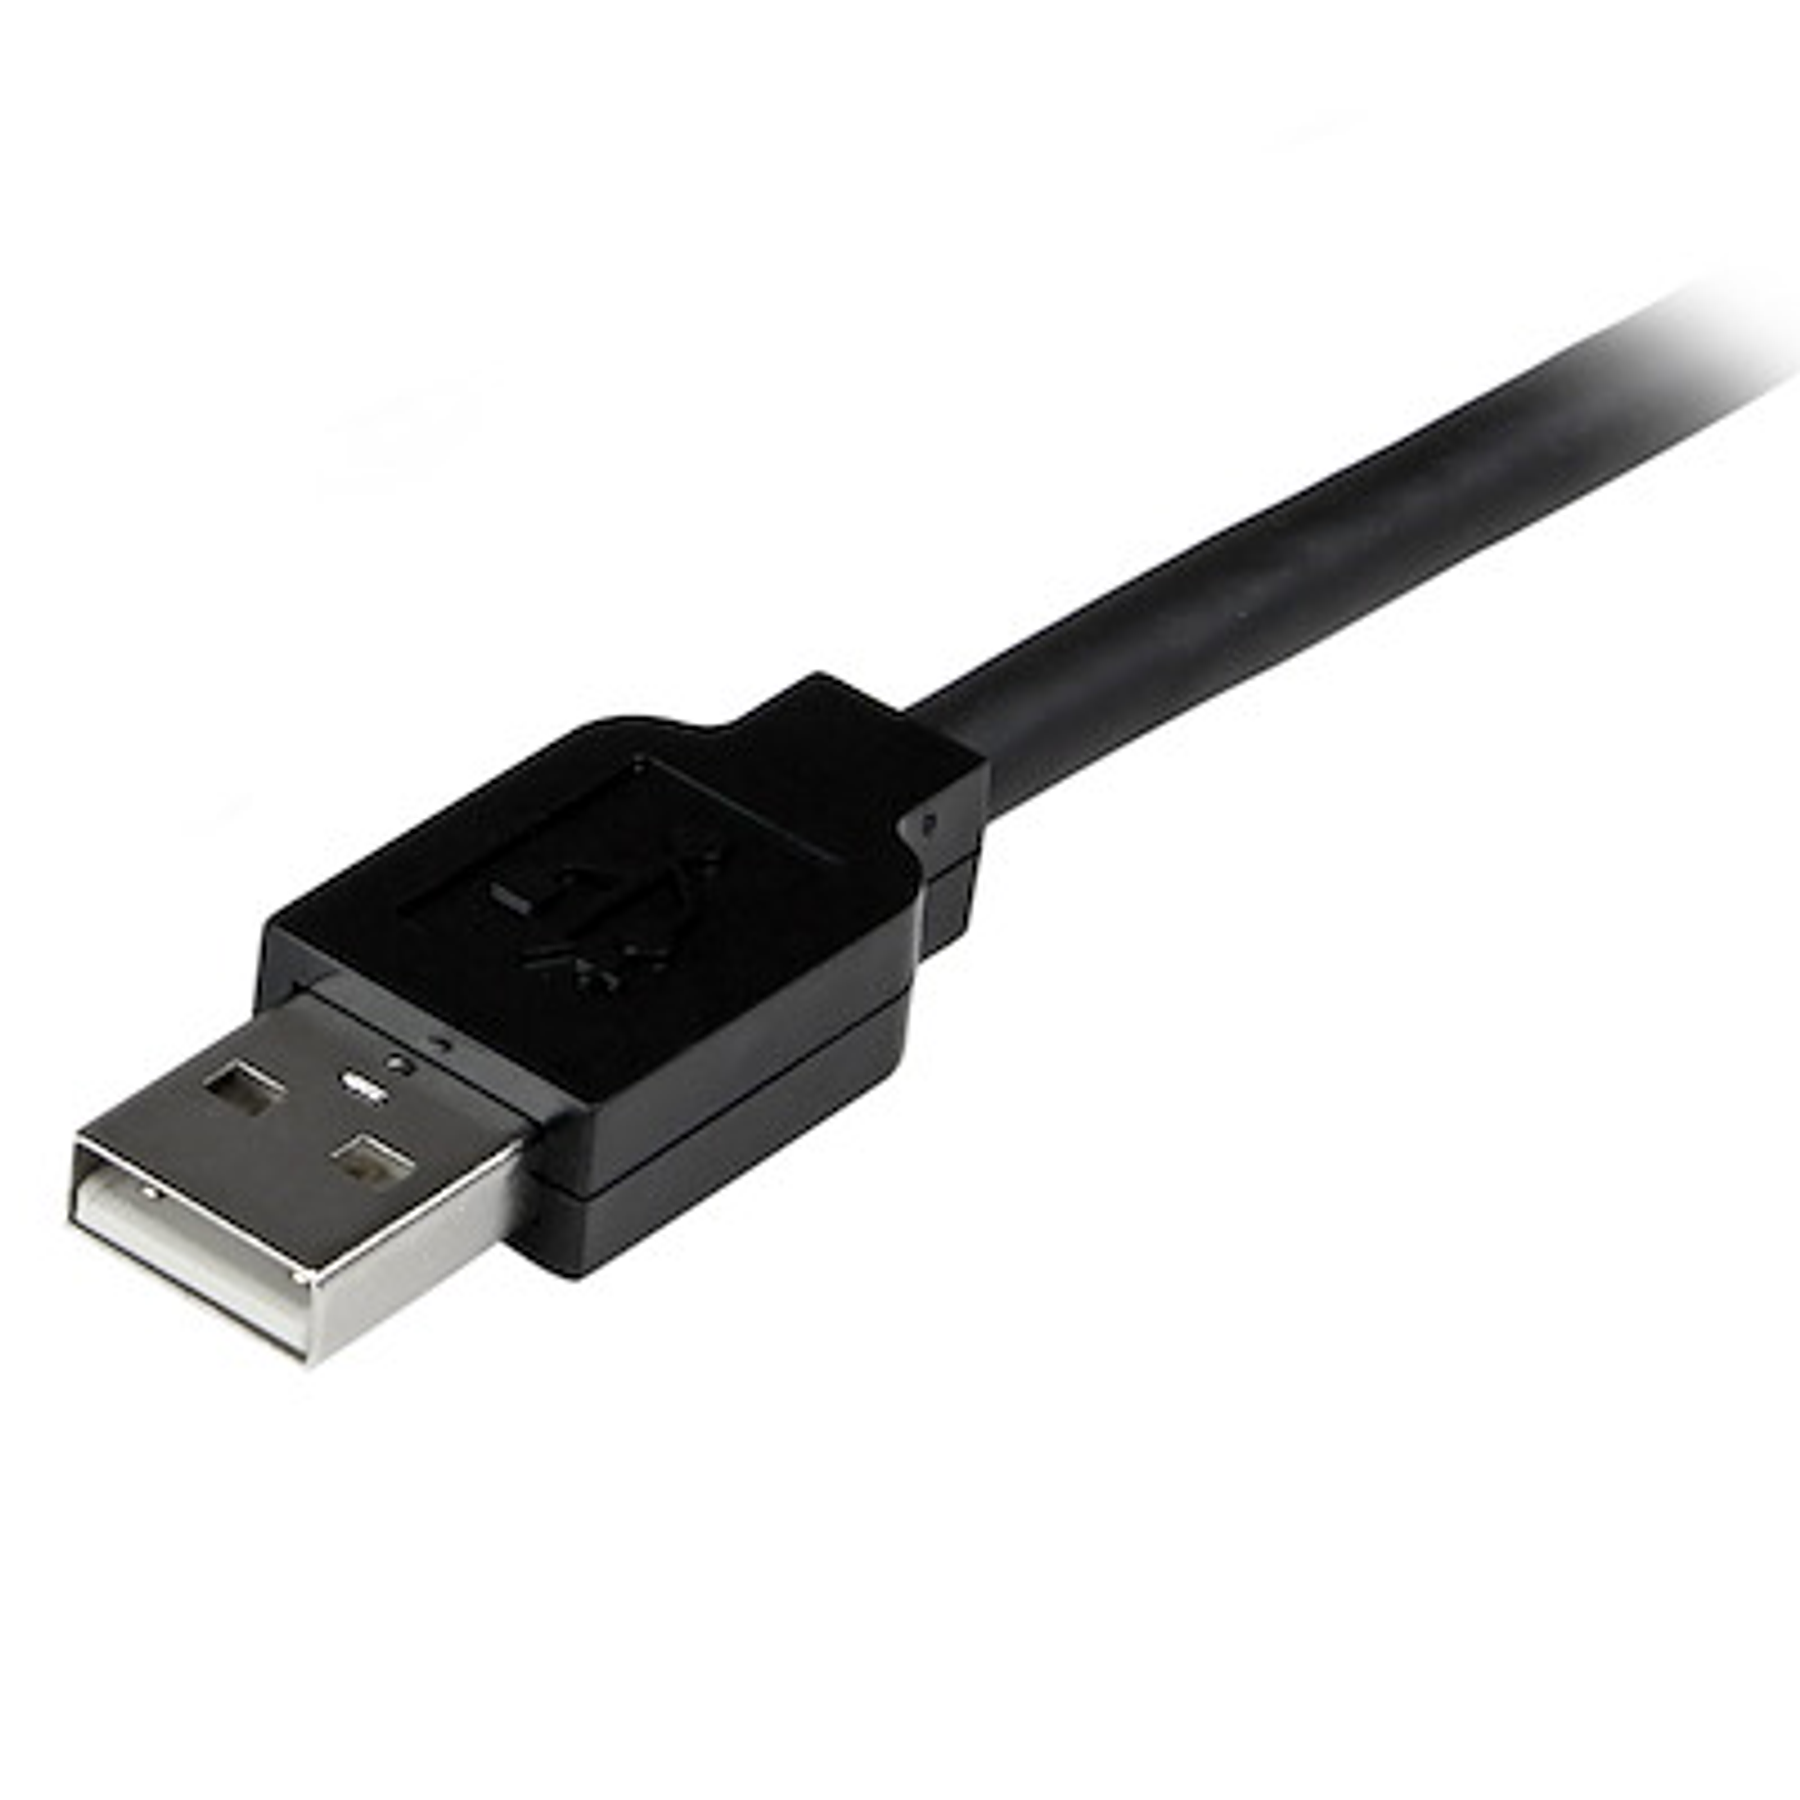 CABLE EXTENSOR ALARGADOR USB 3.0 SUPERSPEED ACTIVO DE 10M - USB A MACHO A  HEMBRA - NEGRO